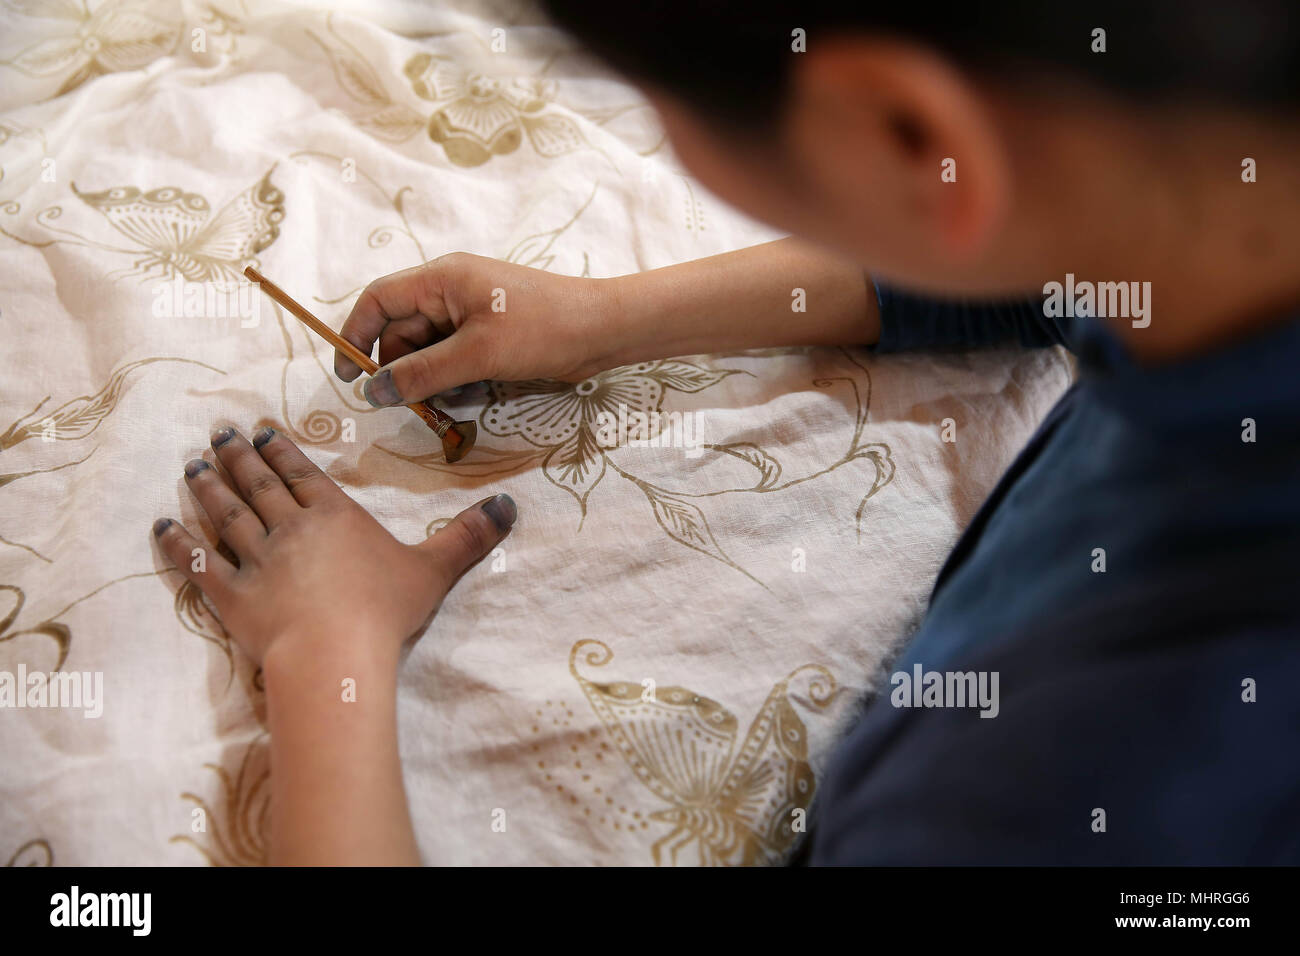 Danzhai, province du Guizhou en Chine. 2 mai, 2018. Zhang Yiping tire dans le comté de Danzhai motif batik, au sud-ouest de la province du Guizhou, en Chine, le 2 mai 2018. Obsédé par la culture batik depuis un enfant, Zhang Yiping, une jeune femme née en 1993, a créé sa propre entreprise de créations de batik à sa ville natale de Danzhai en 2014. Grâce à plusieurs années de développement, Zhang a mis en place sa boutique batik et également une base de production fait-main où plus de 100 femmes ont été employées. Credit : Huang Xiaohai/Xinhua/Alamy Live News Banque D'Images